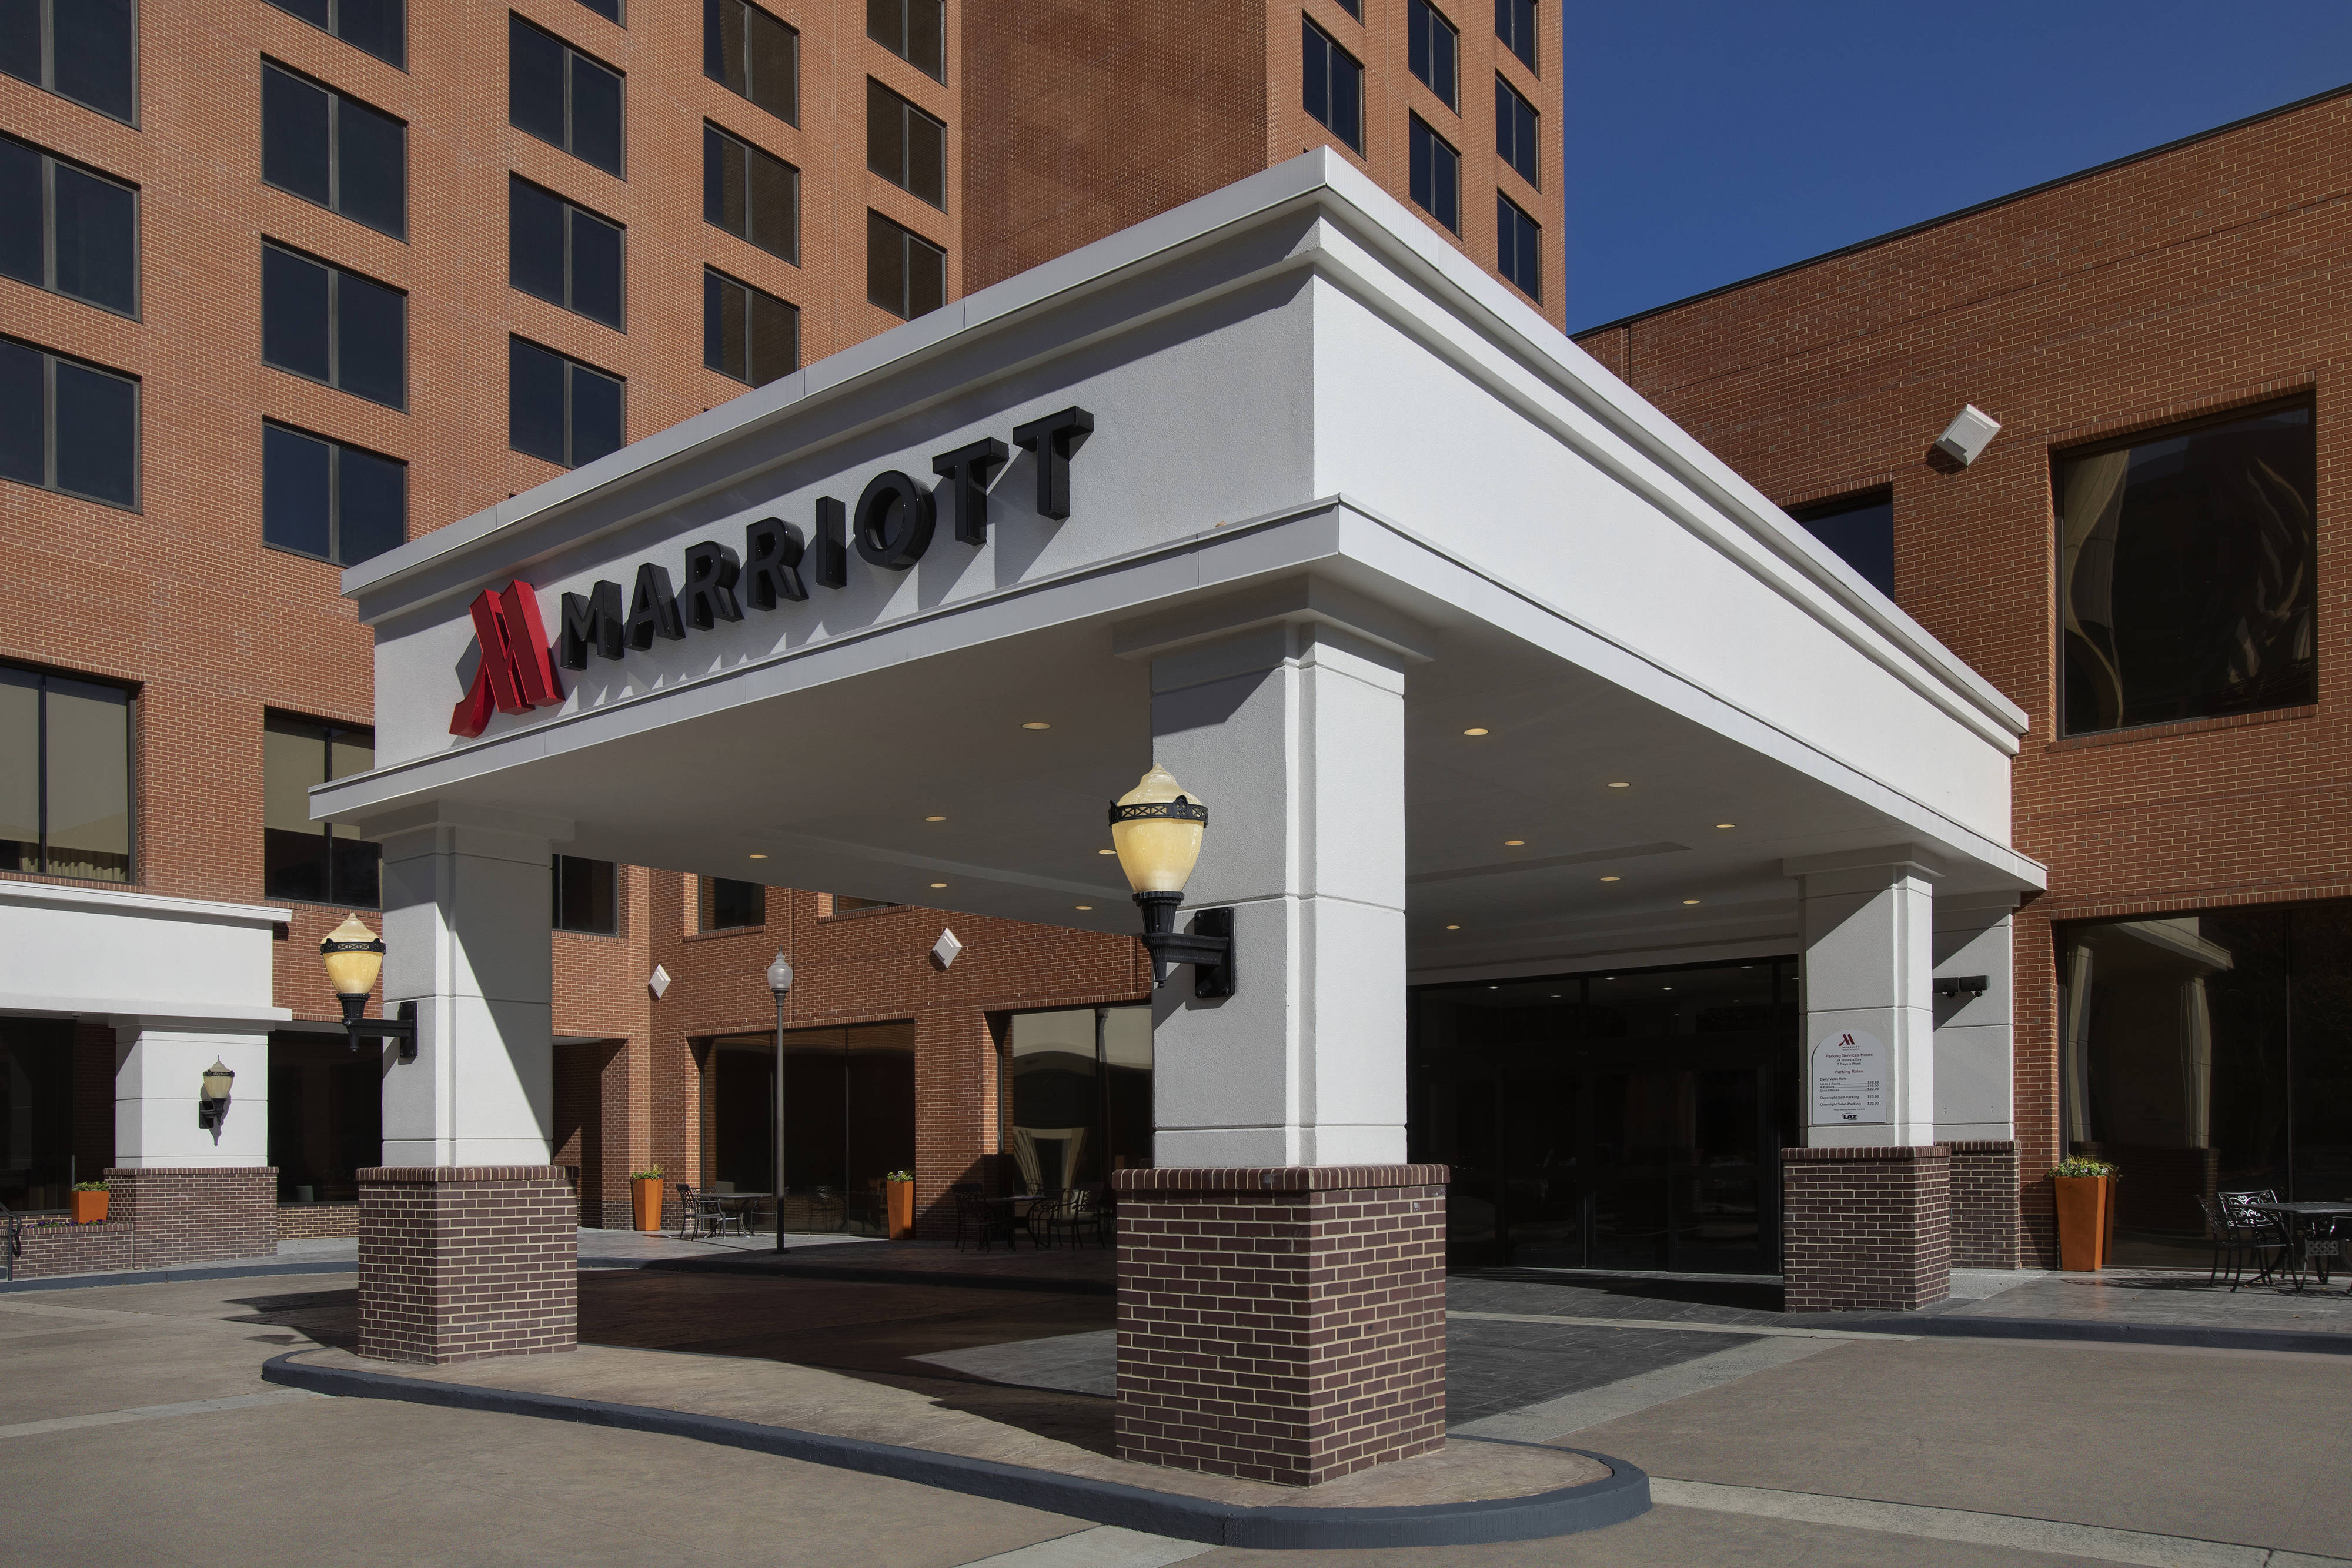 Photo of Marriott Winston-Salem, Winston Salem, NC